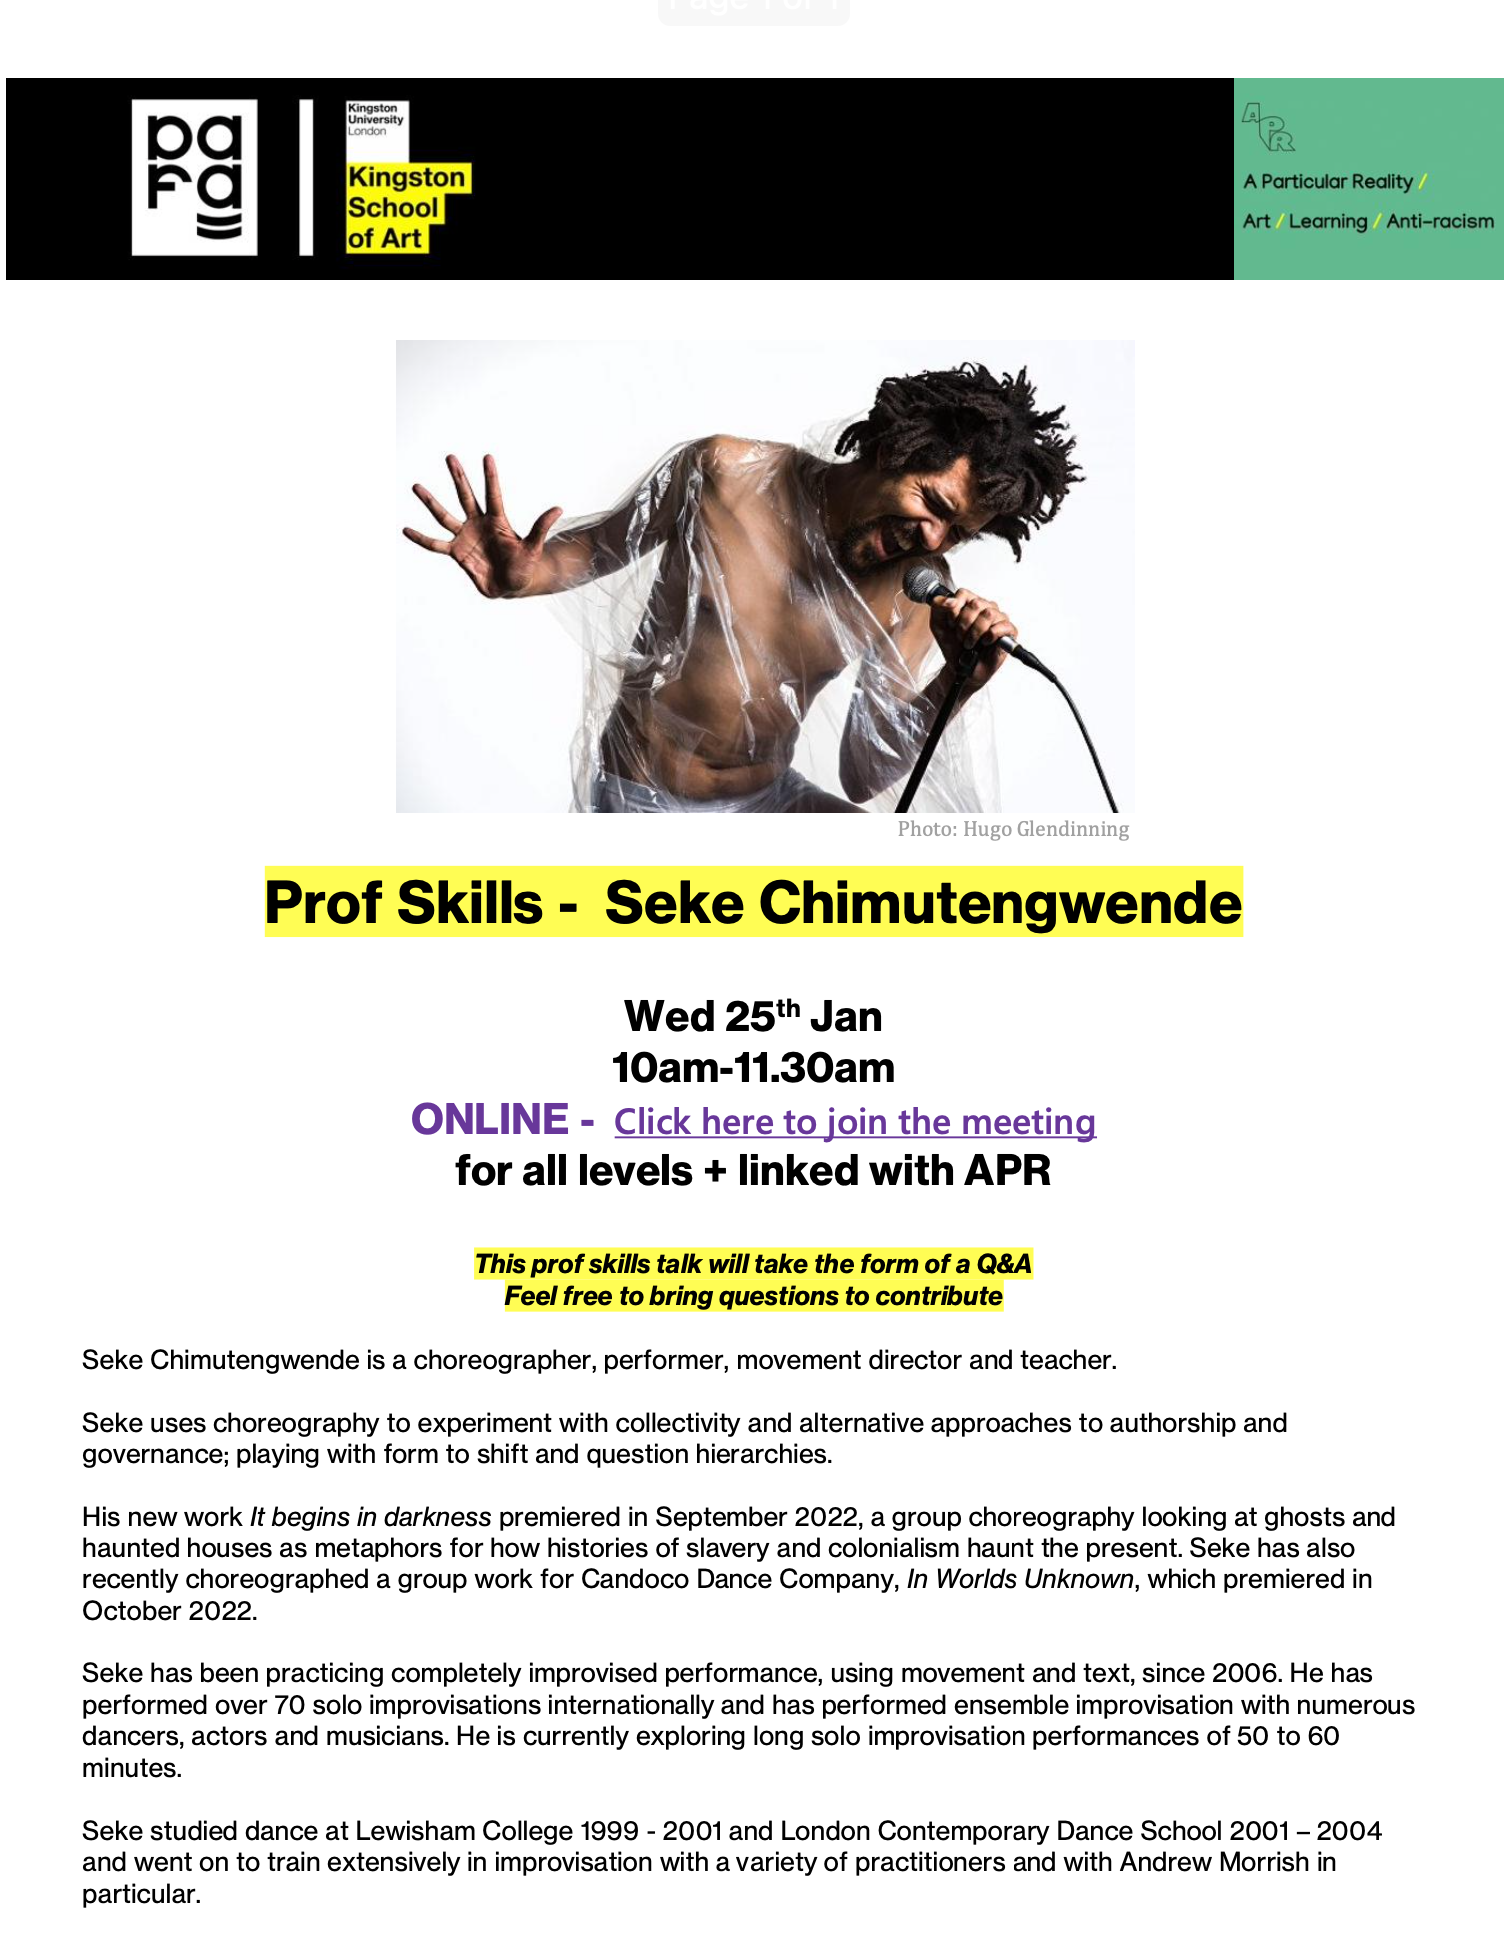 Prof Skills talk –  Seke Chimutengwende